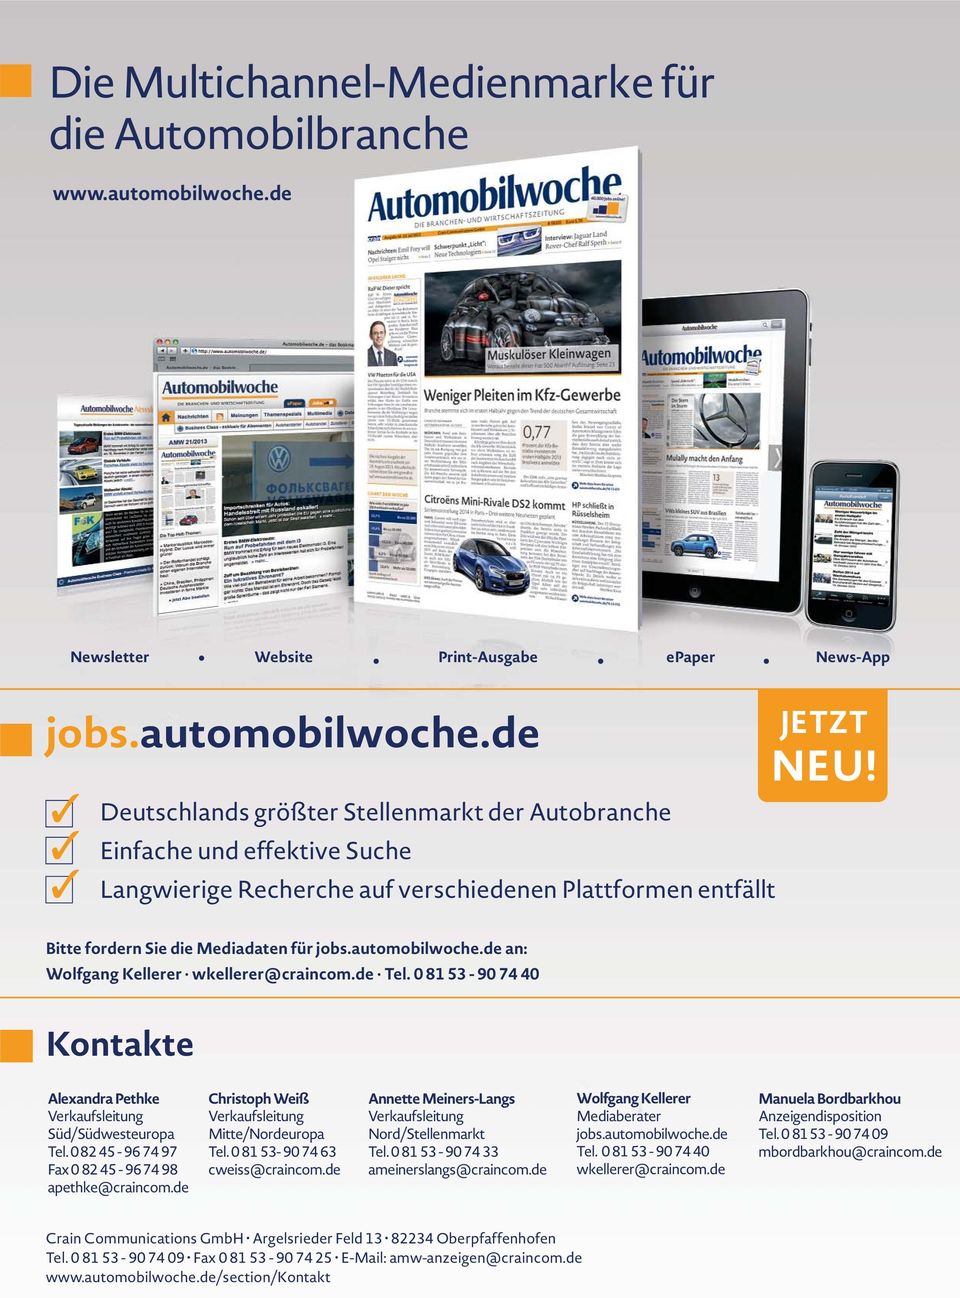 de Deutschlands größter Stellenmarkt der Autobranche Einfache und effektive Suche Langwierige Recherche auf verschiedenen Plattformen entfällt JETZT NEU! Bitte fordern Sie die Mediadaten für jobs.